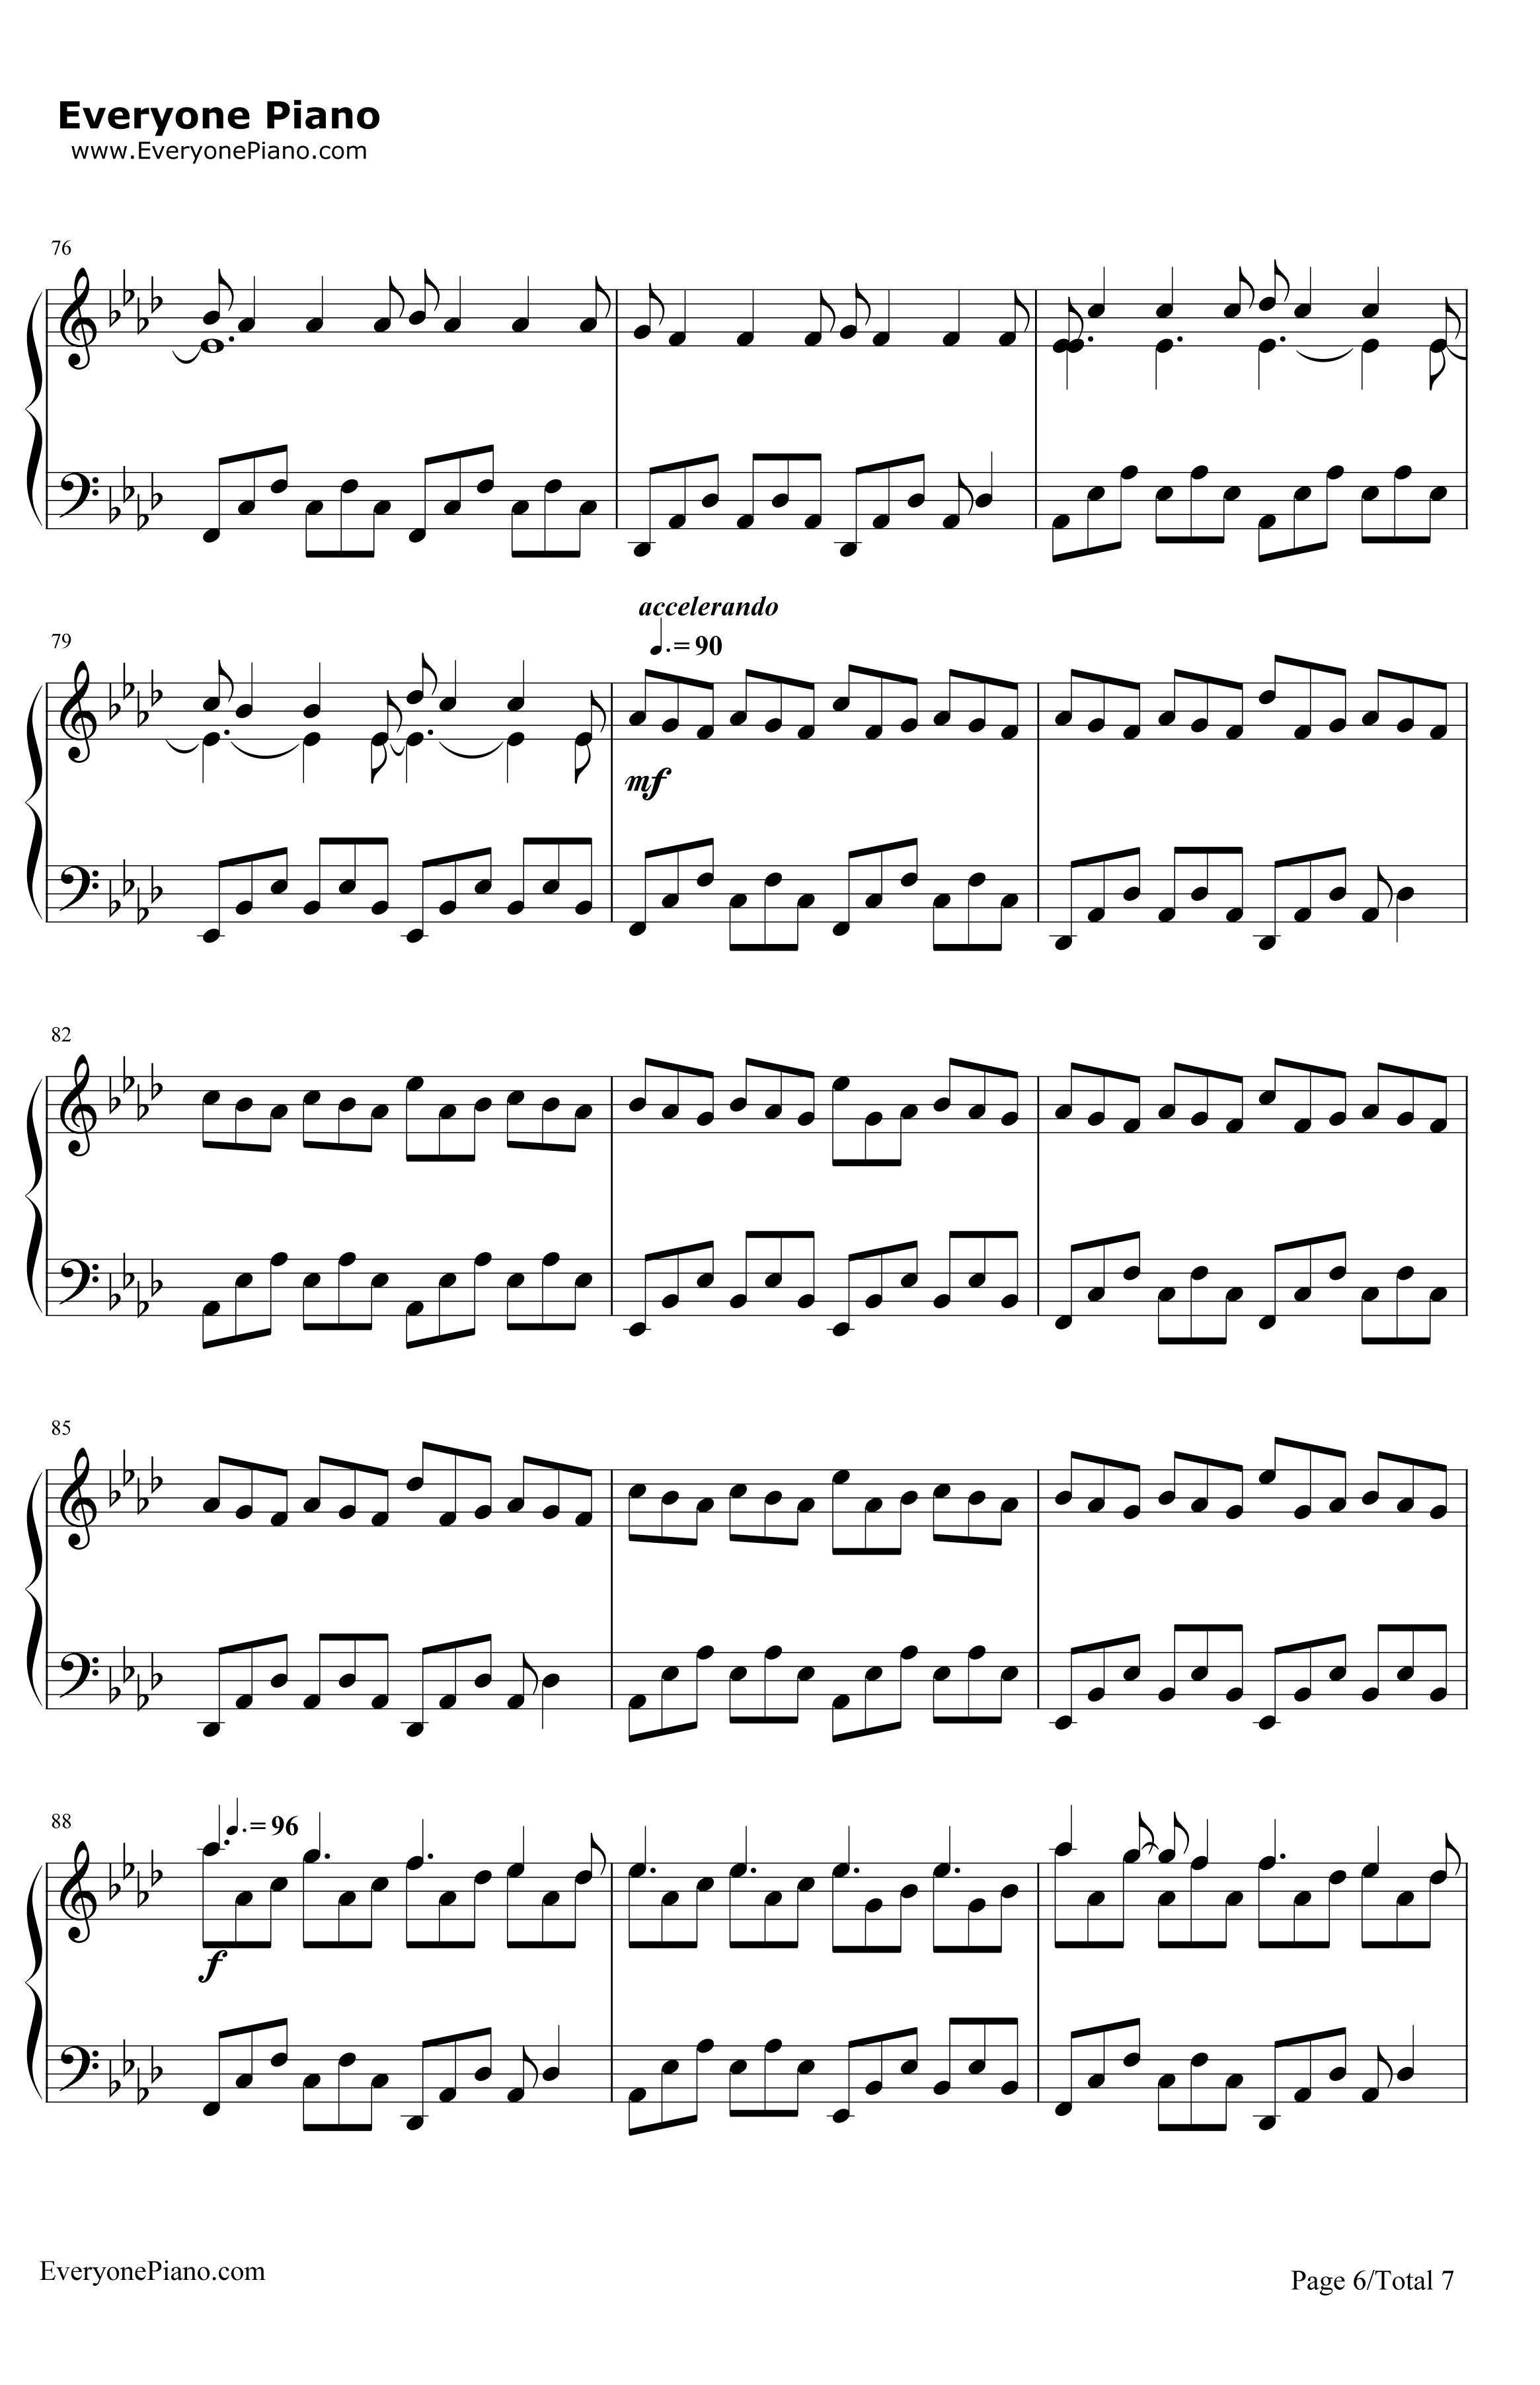 NuvoleBianche钢琴谱-LudovicoEinaudi6